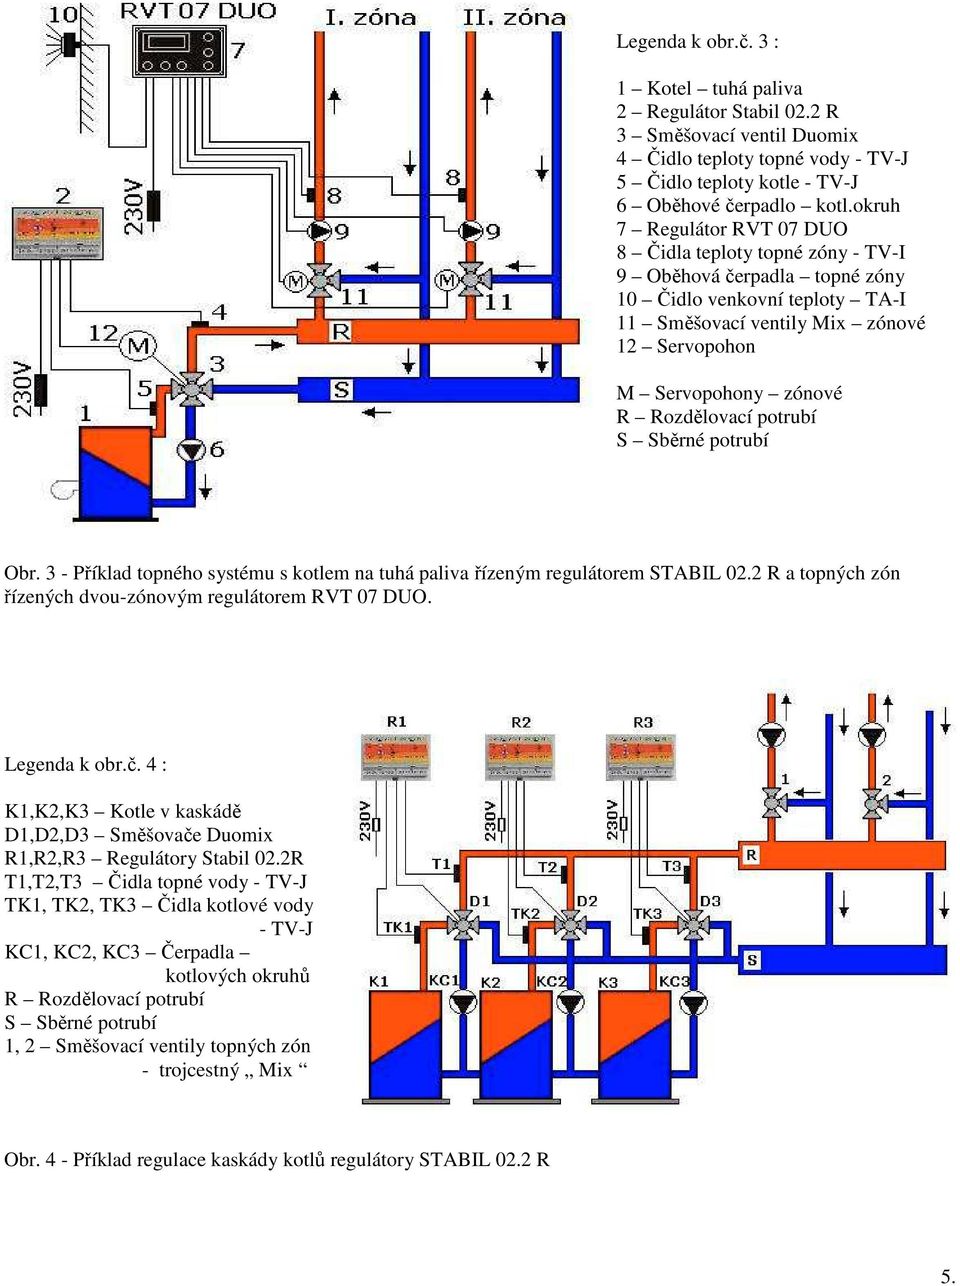 Rozdělovací potrubí S Sběrné potrubí Obr. 3 - Příklad topného systému s kotlem na tuhá paliva řízeným regulátorem STABIL 02.2 R a topných zón řízených dvou-zónovým regulátorem RVT 07 DUO.